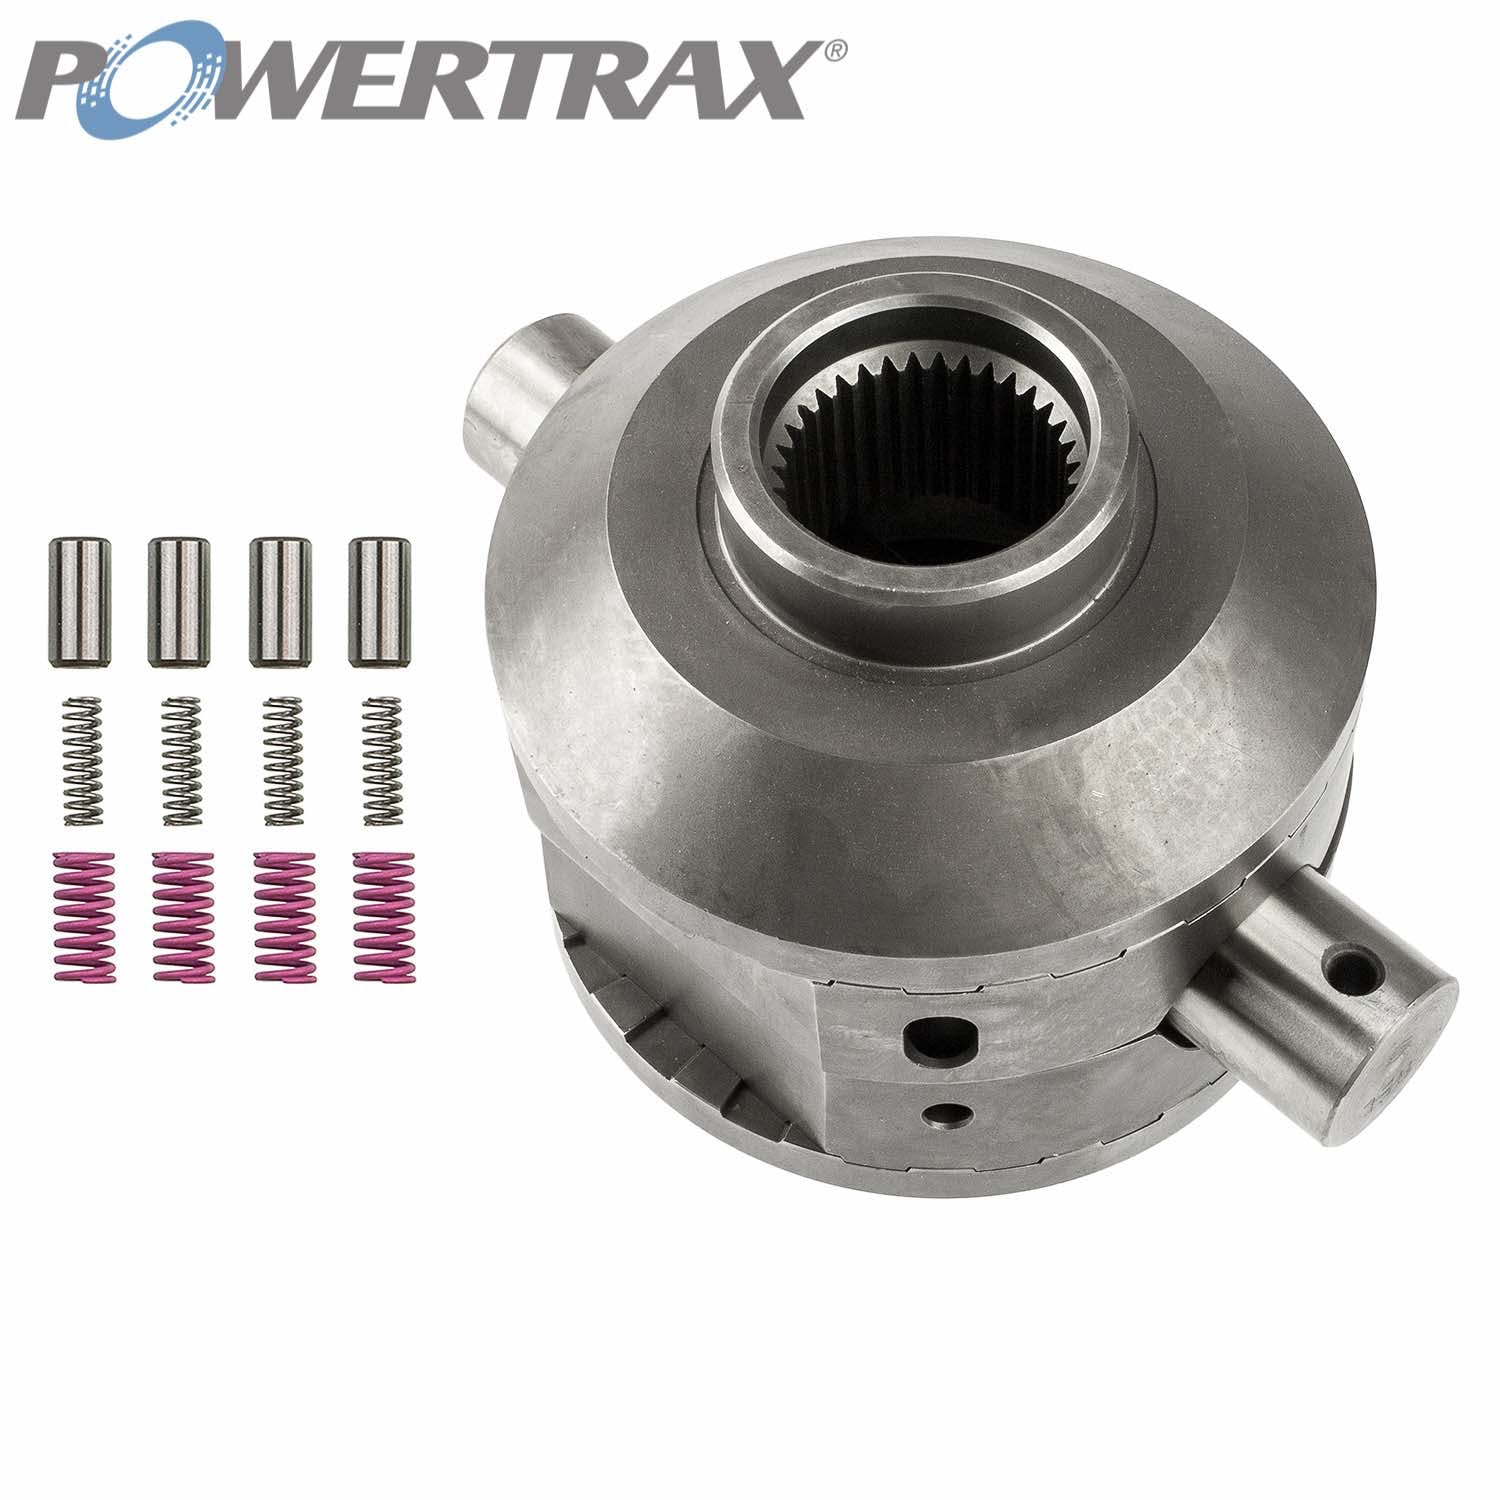 PowerTrax 2810-LR Lock Right Locker